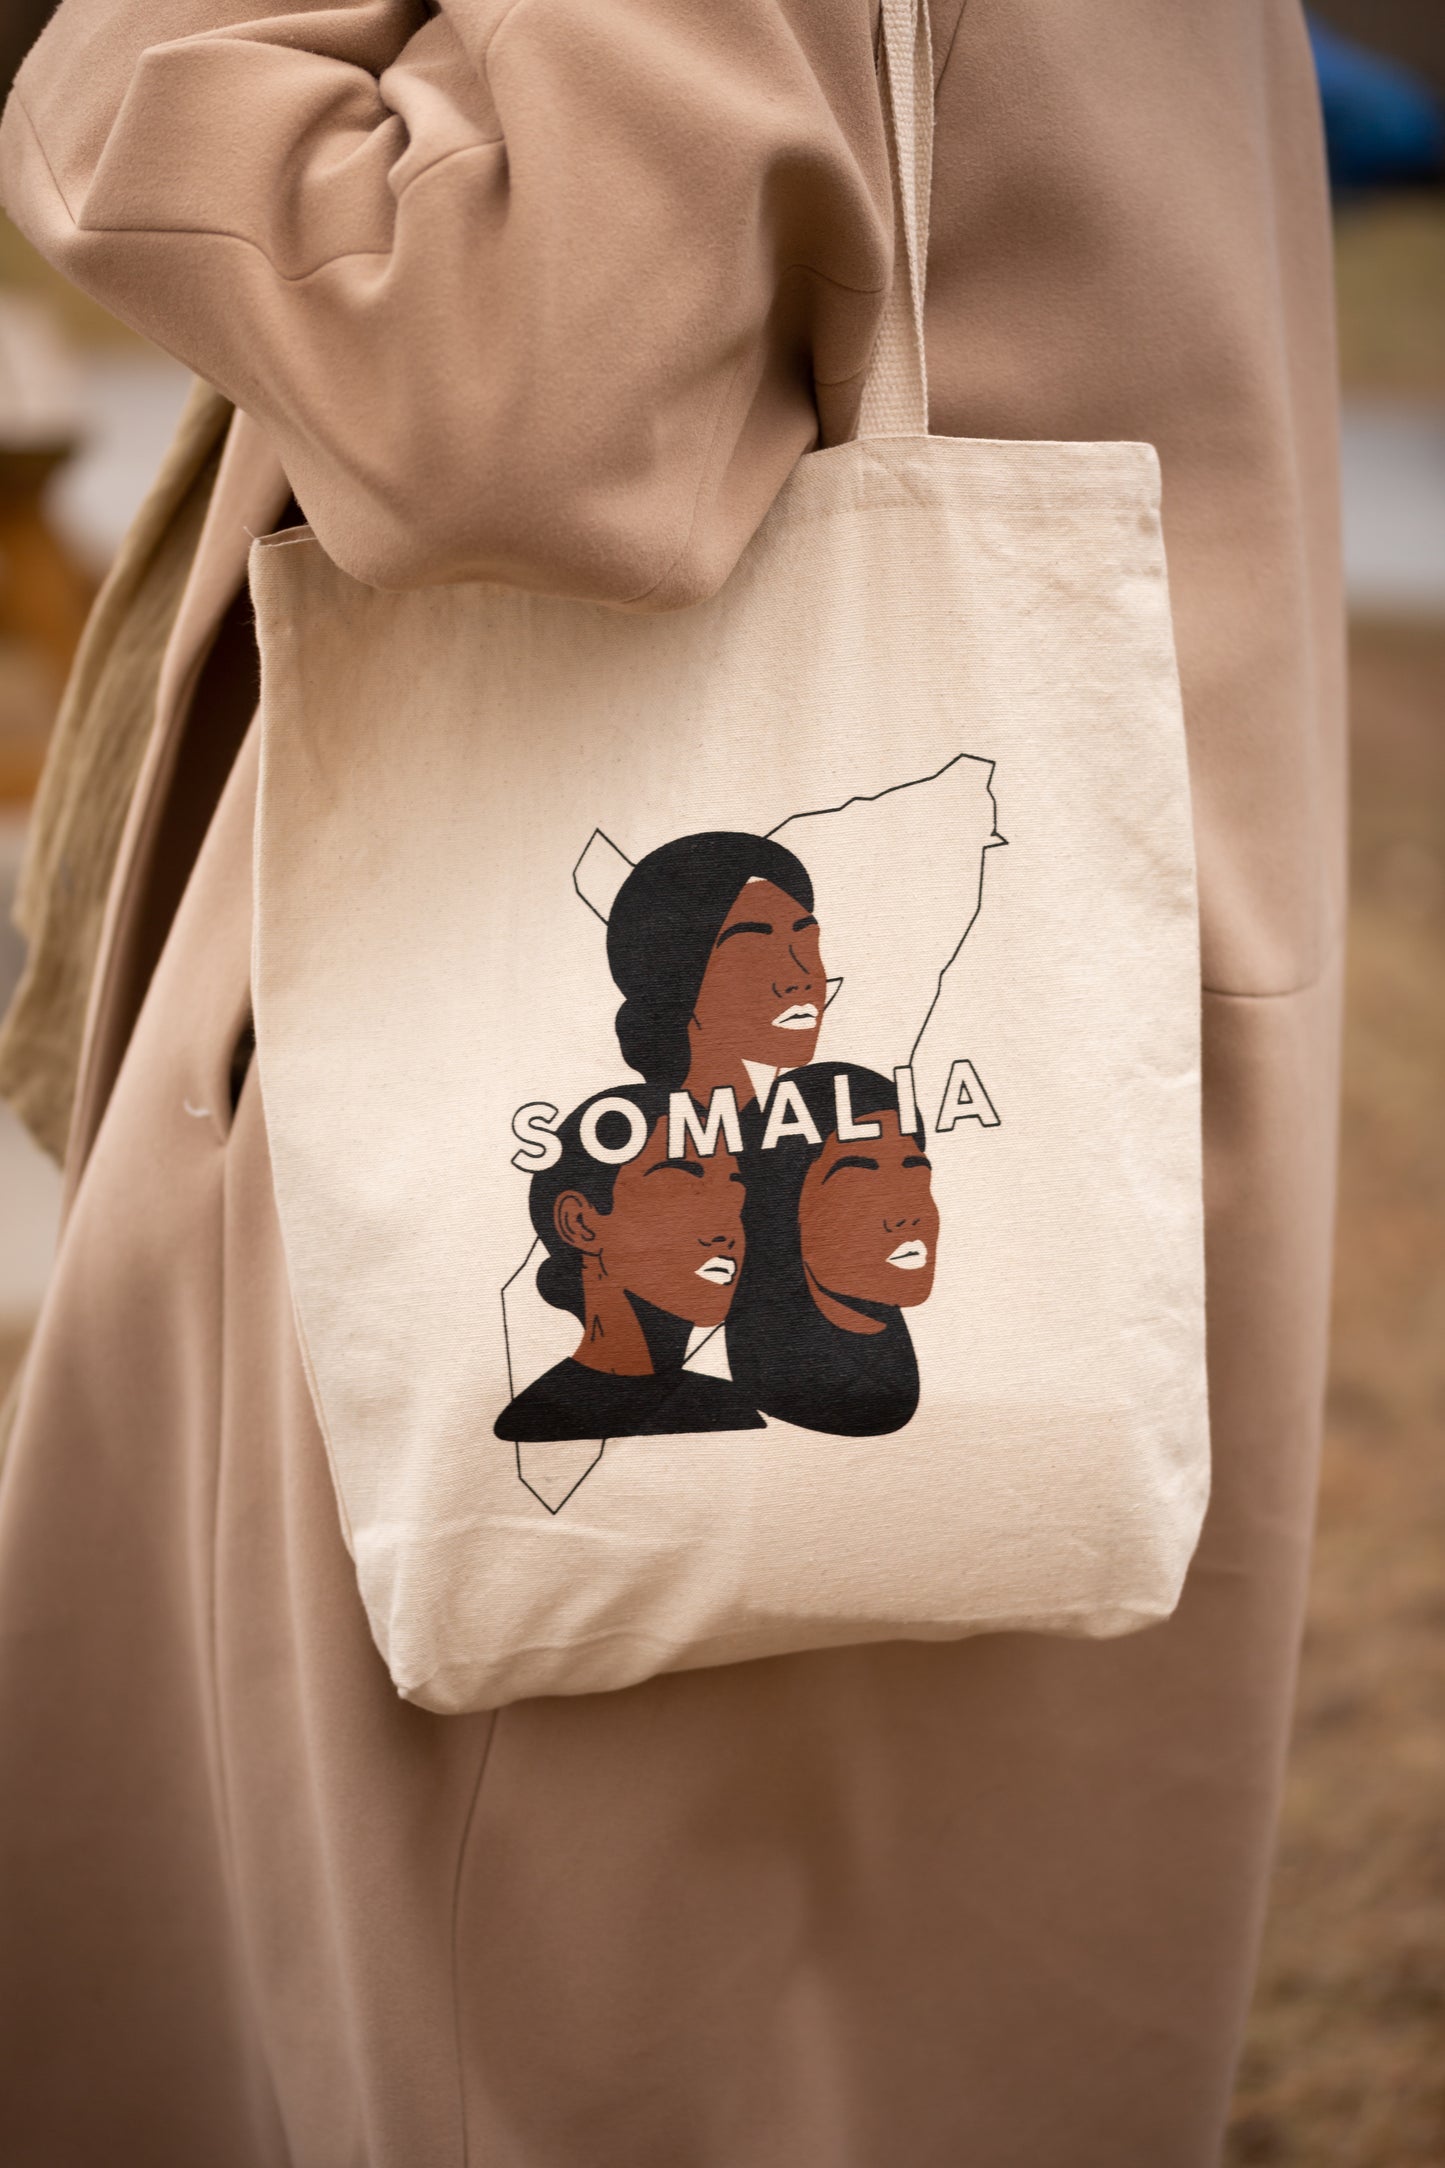 Somalia Tote bag